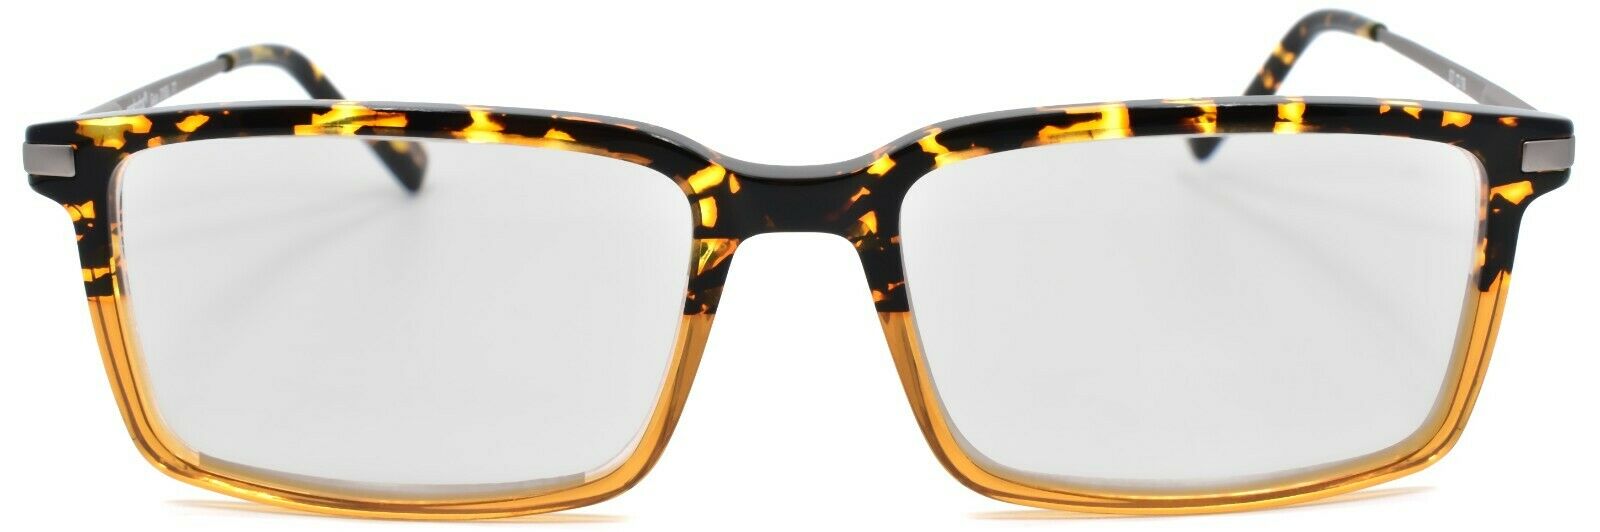 2-Eyebobs Gus 3155 77 Men's Reading Glasses Amber Tortoise / Light Gunmetal +1.75-842754172110-IKSpecs